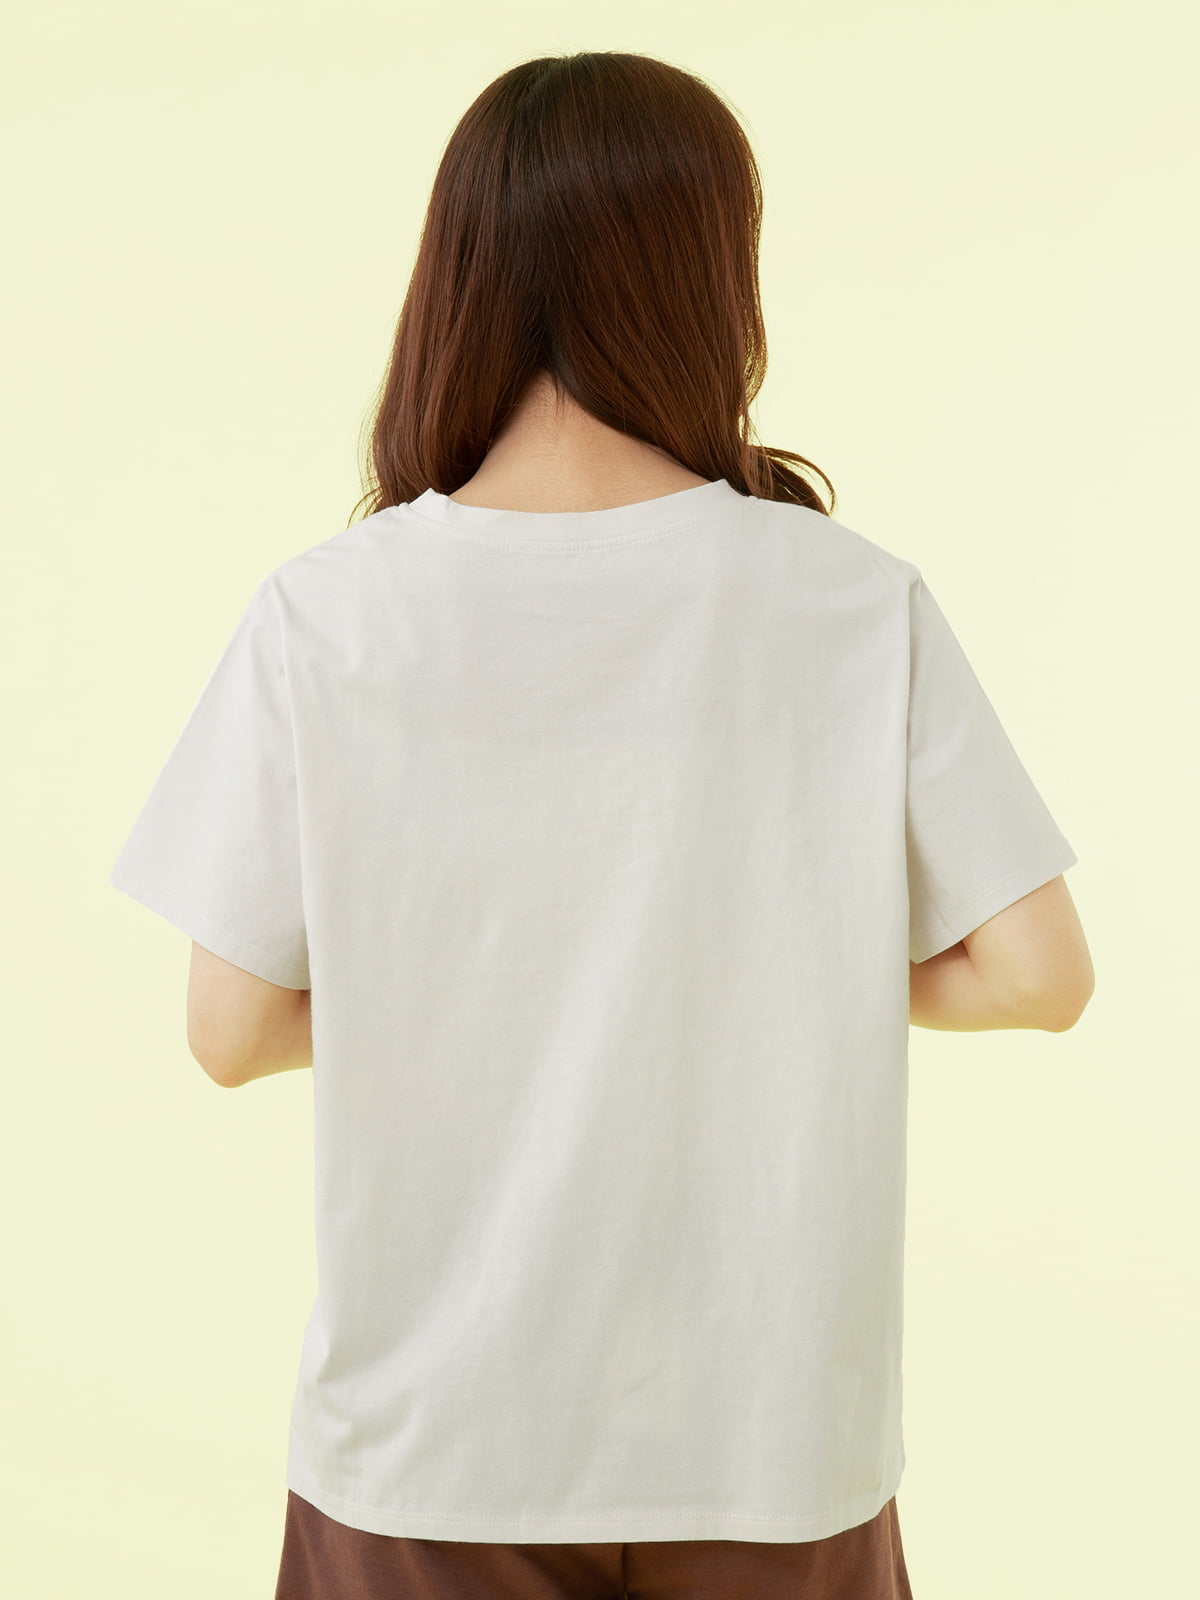 世界的に ルームウェア 部屋着 パジャマ レディース 女性 リラっこティ 綿100%もこもこトイプードル刺繍Tシャツ チュチュアンナ 